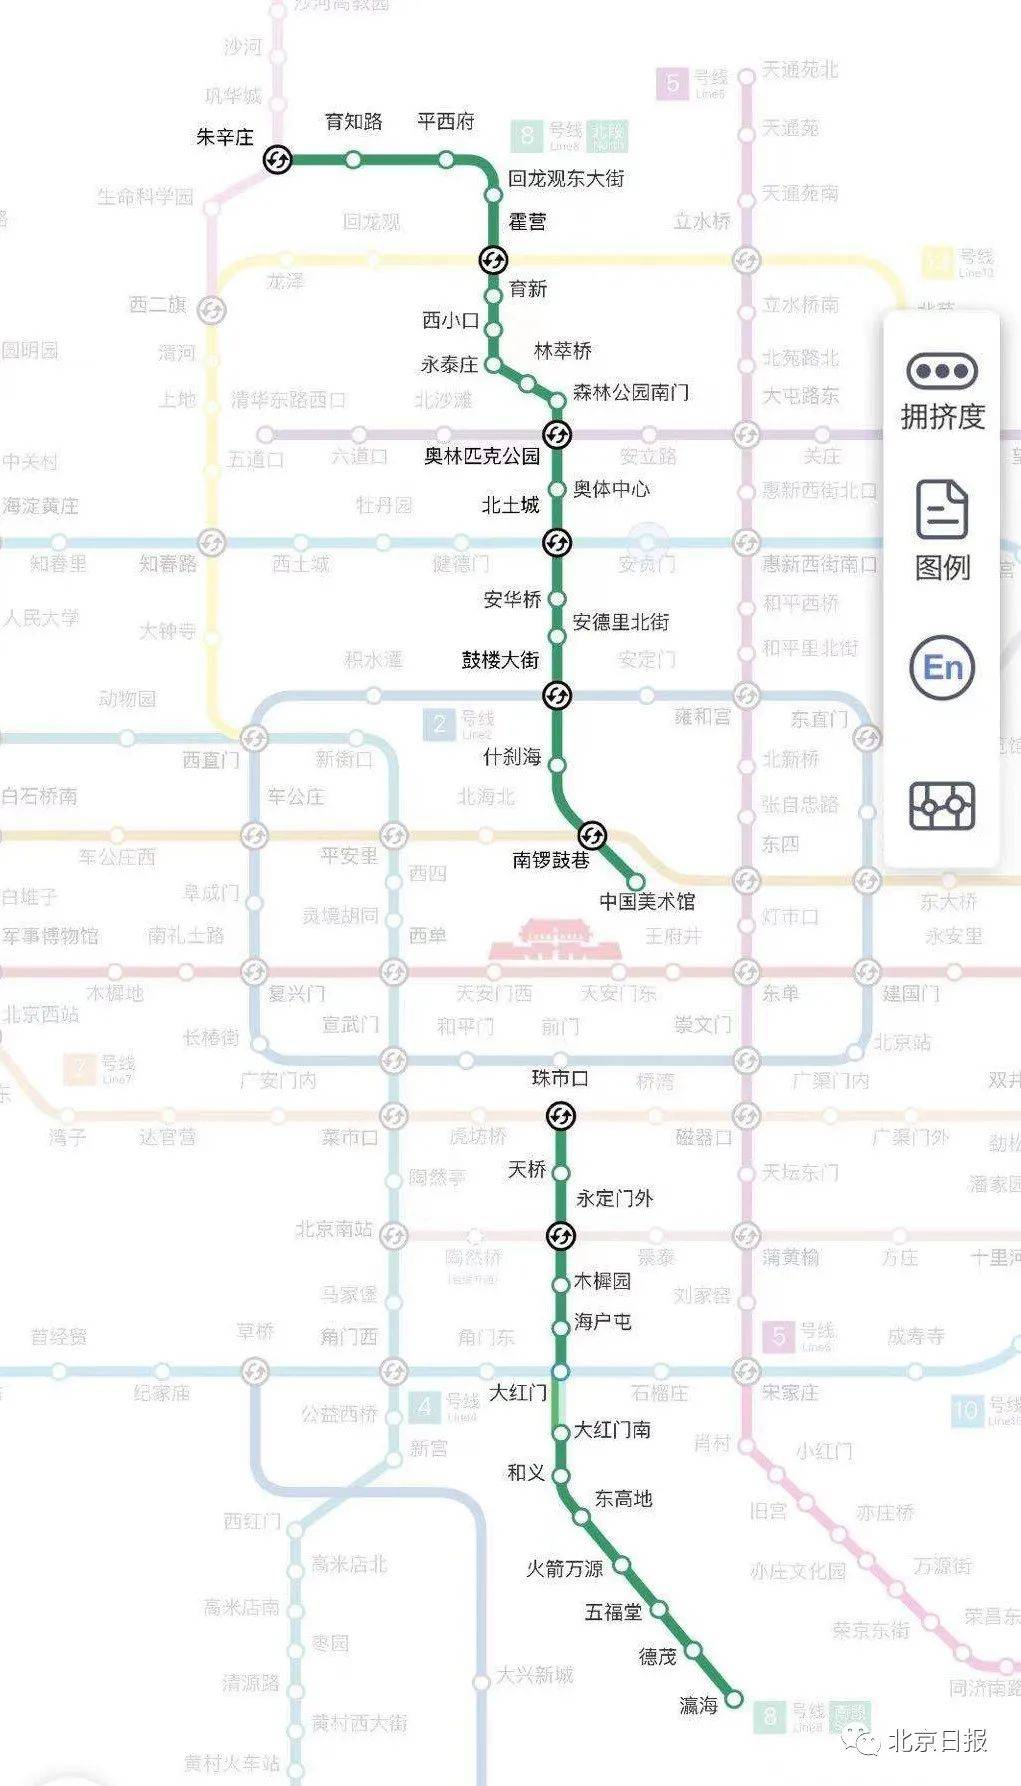 在地铁线路图中,位居正中的地铁8号线,基本与北京中轴线重合,是线网